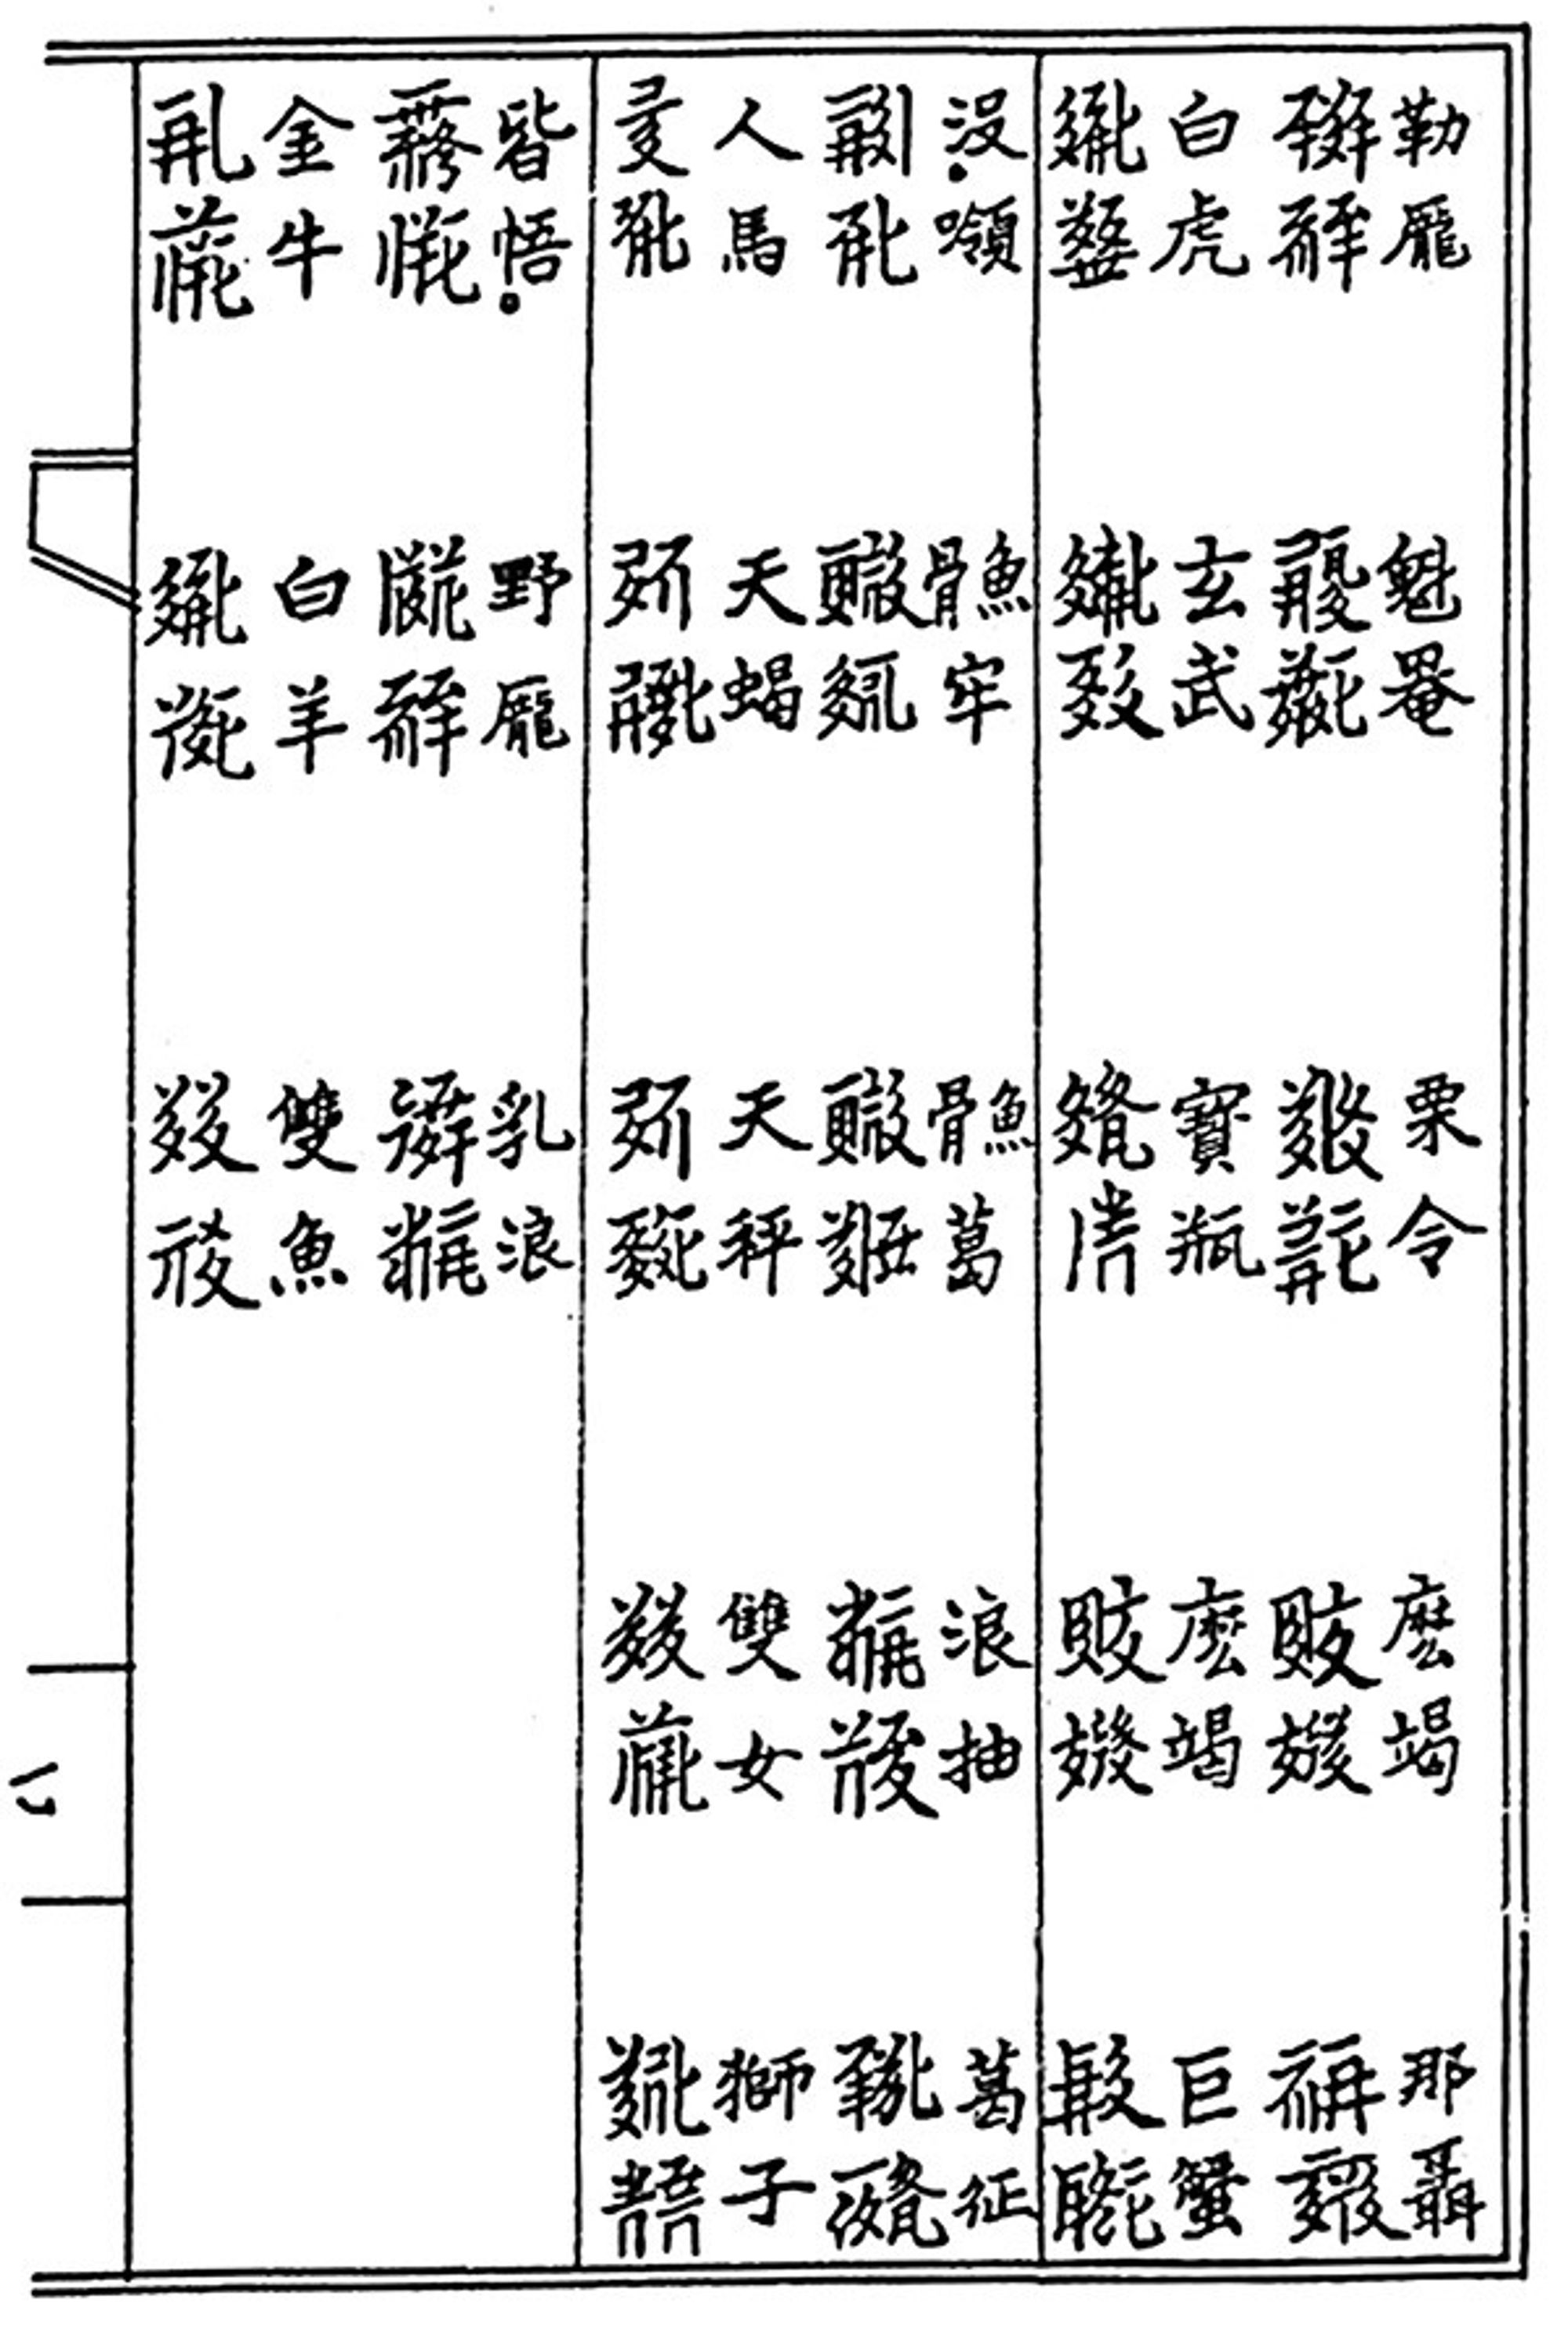 《番汉合时掌中珠》中的十二星座西夏文、汉文对照表。